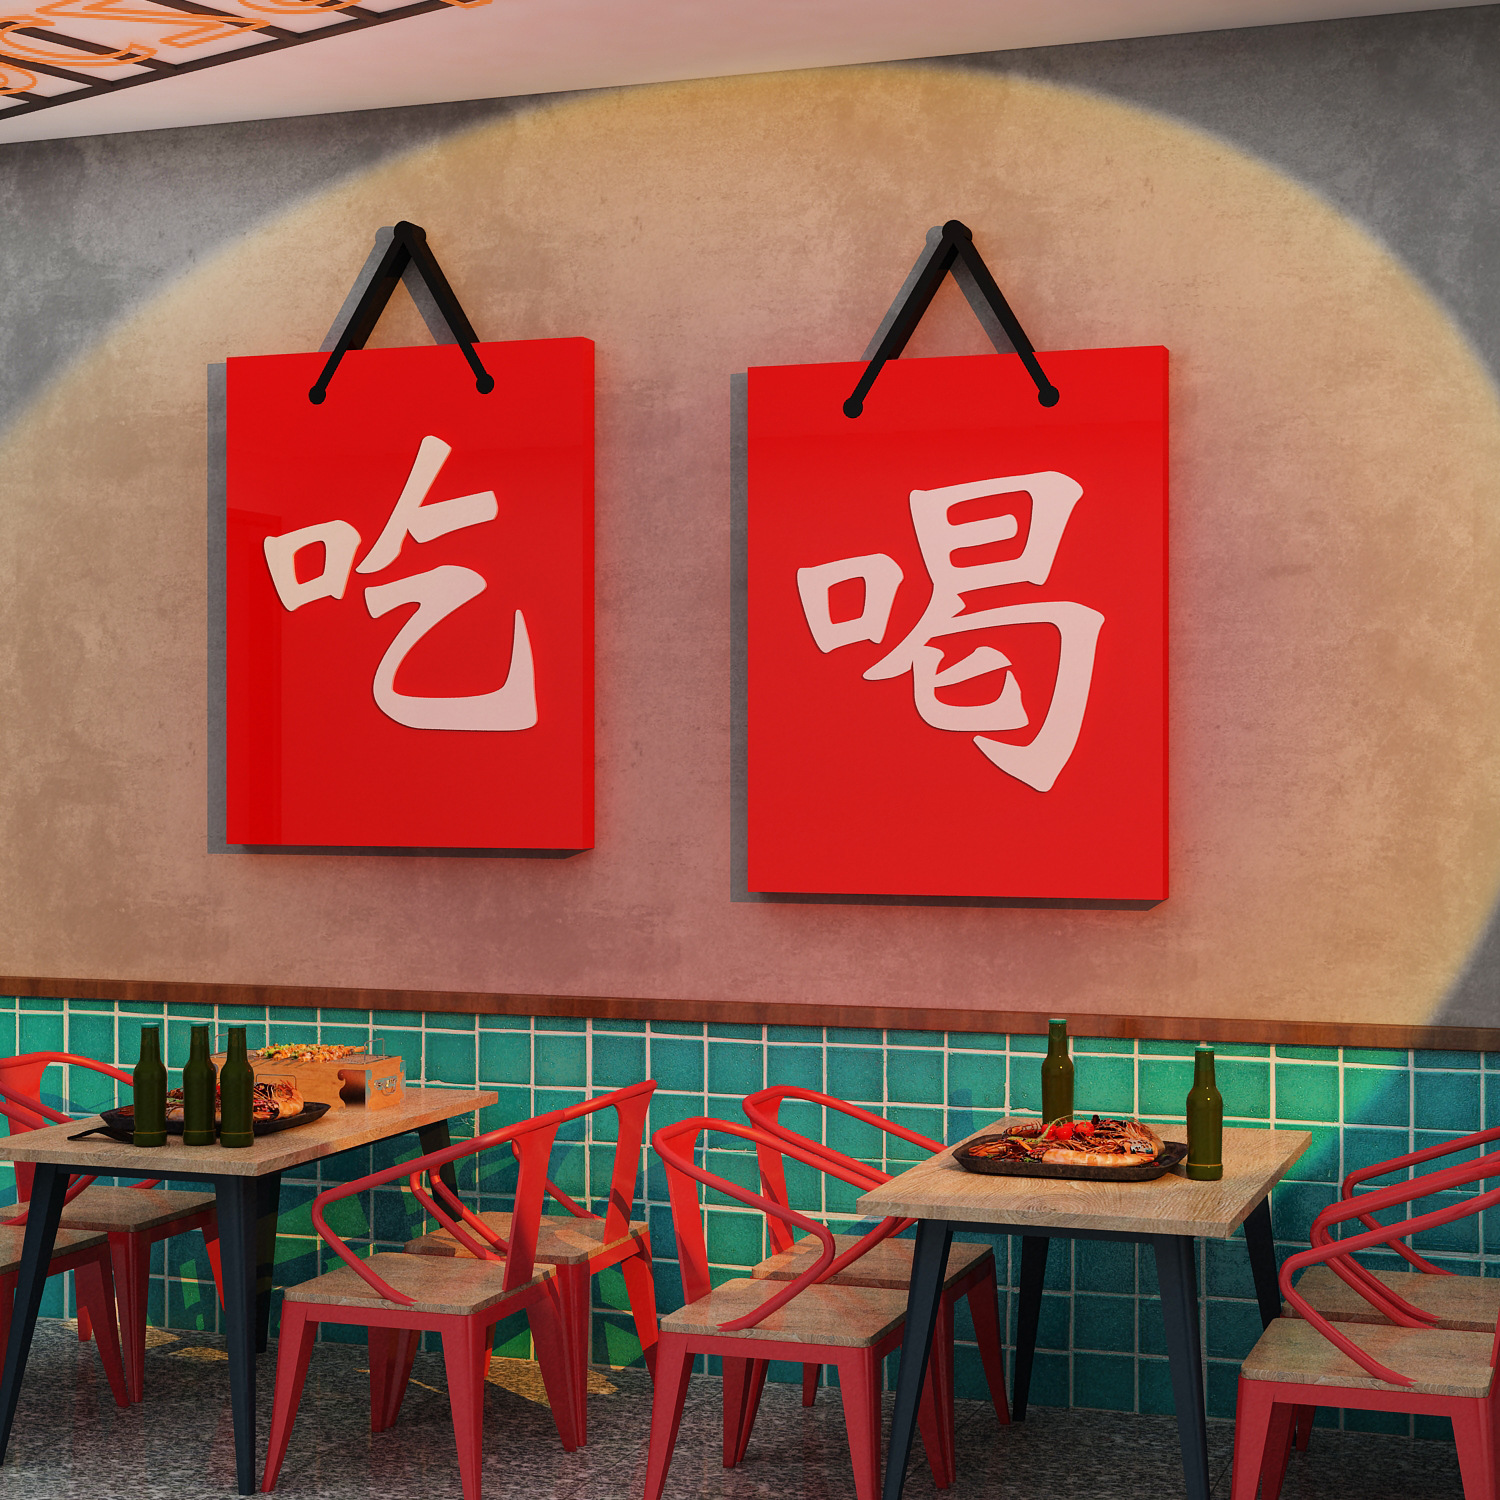 网红烧烤肉串店创意墙面装饰品餐饮文化壁画饭馆工业风布置贴纸挂